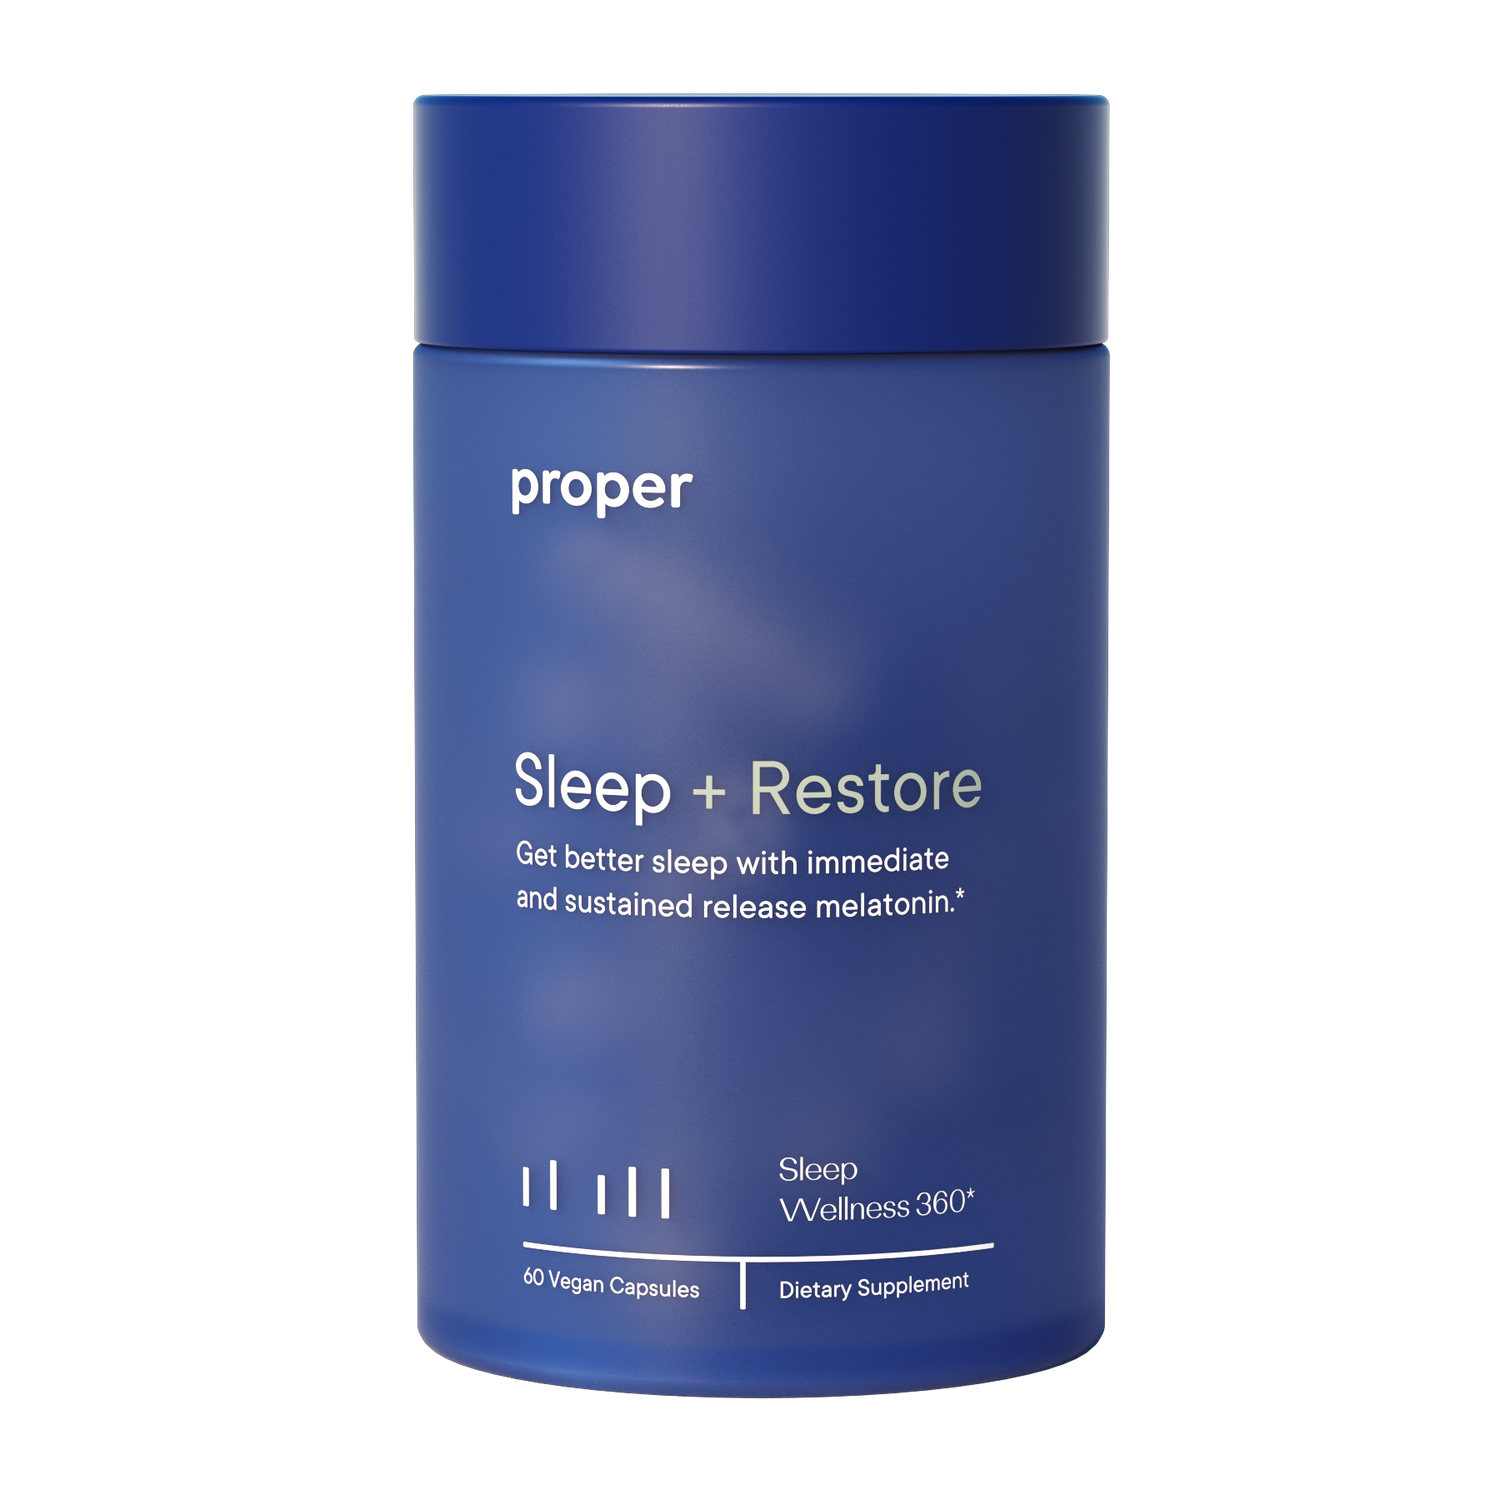 Sleep + Restore